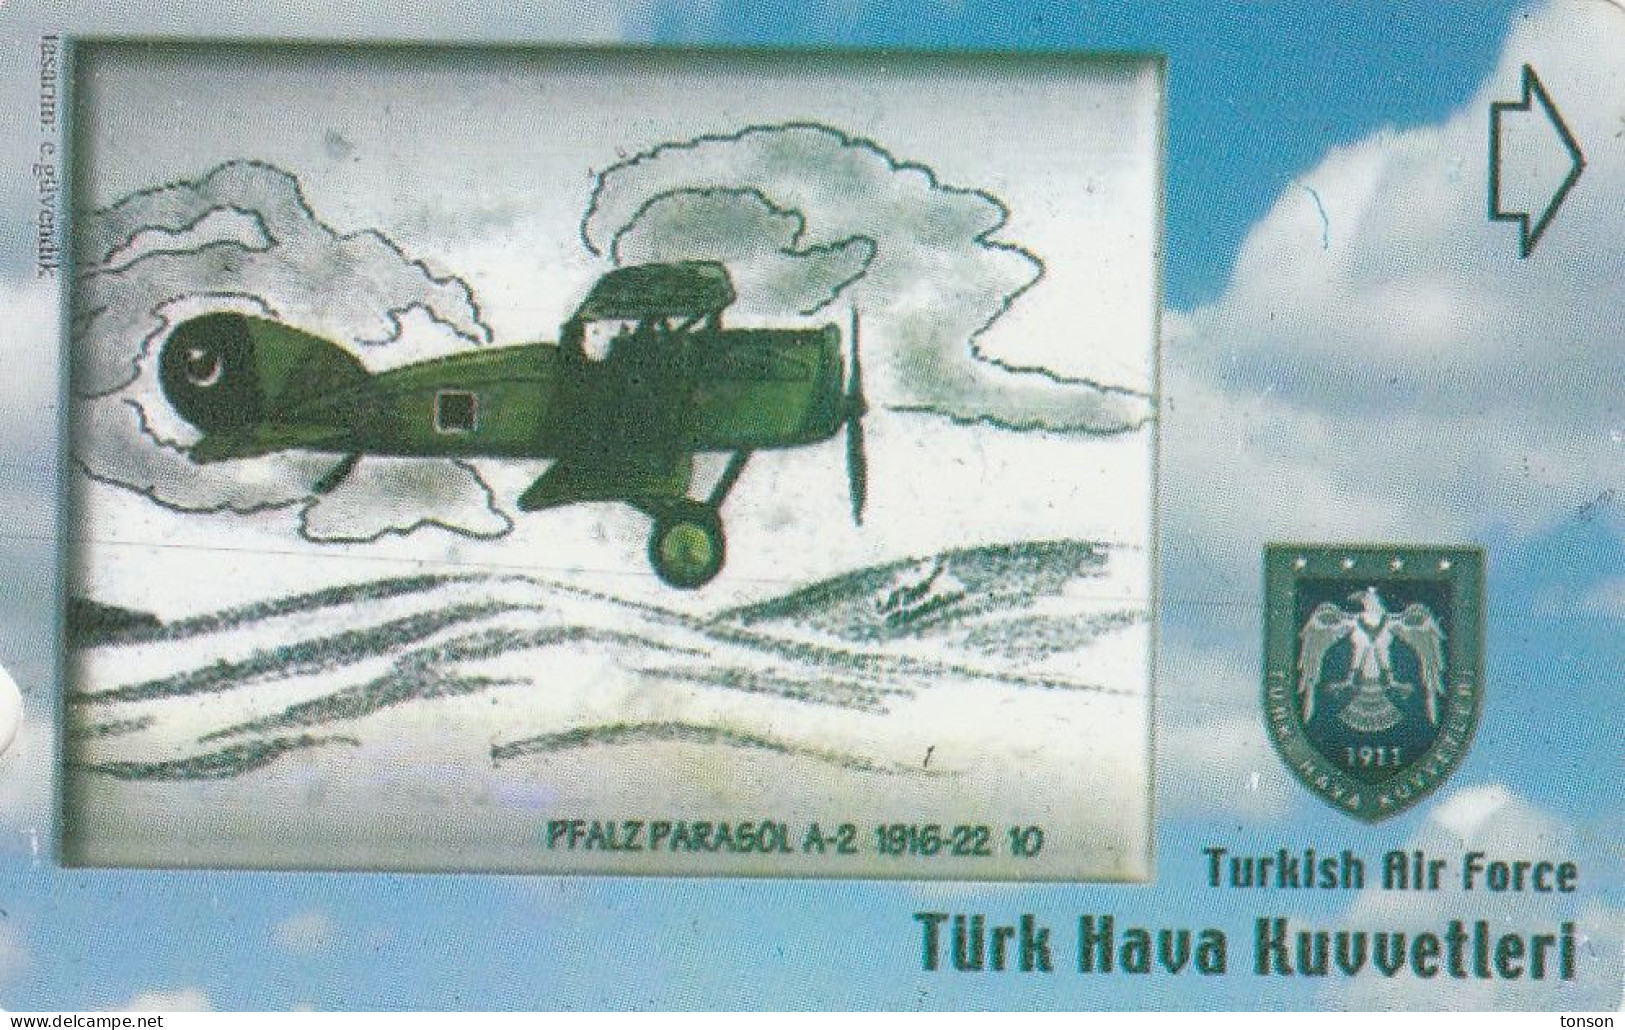 Turkey, TR-N-448, Turkish Air Force - 2, Pfalz Parasol A-2 1916-22,  2 Scans. - Turkey